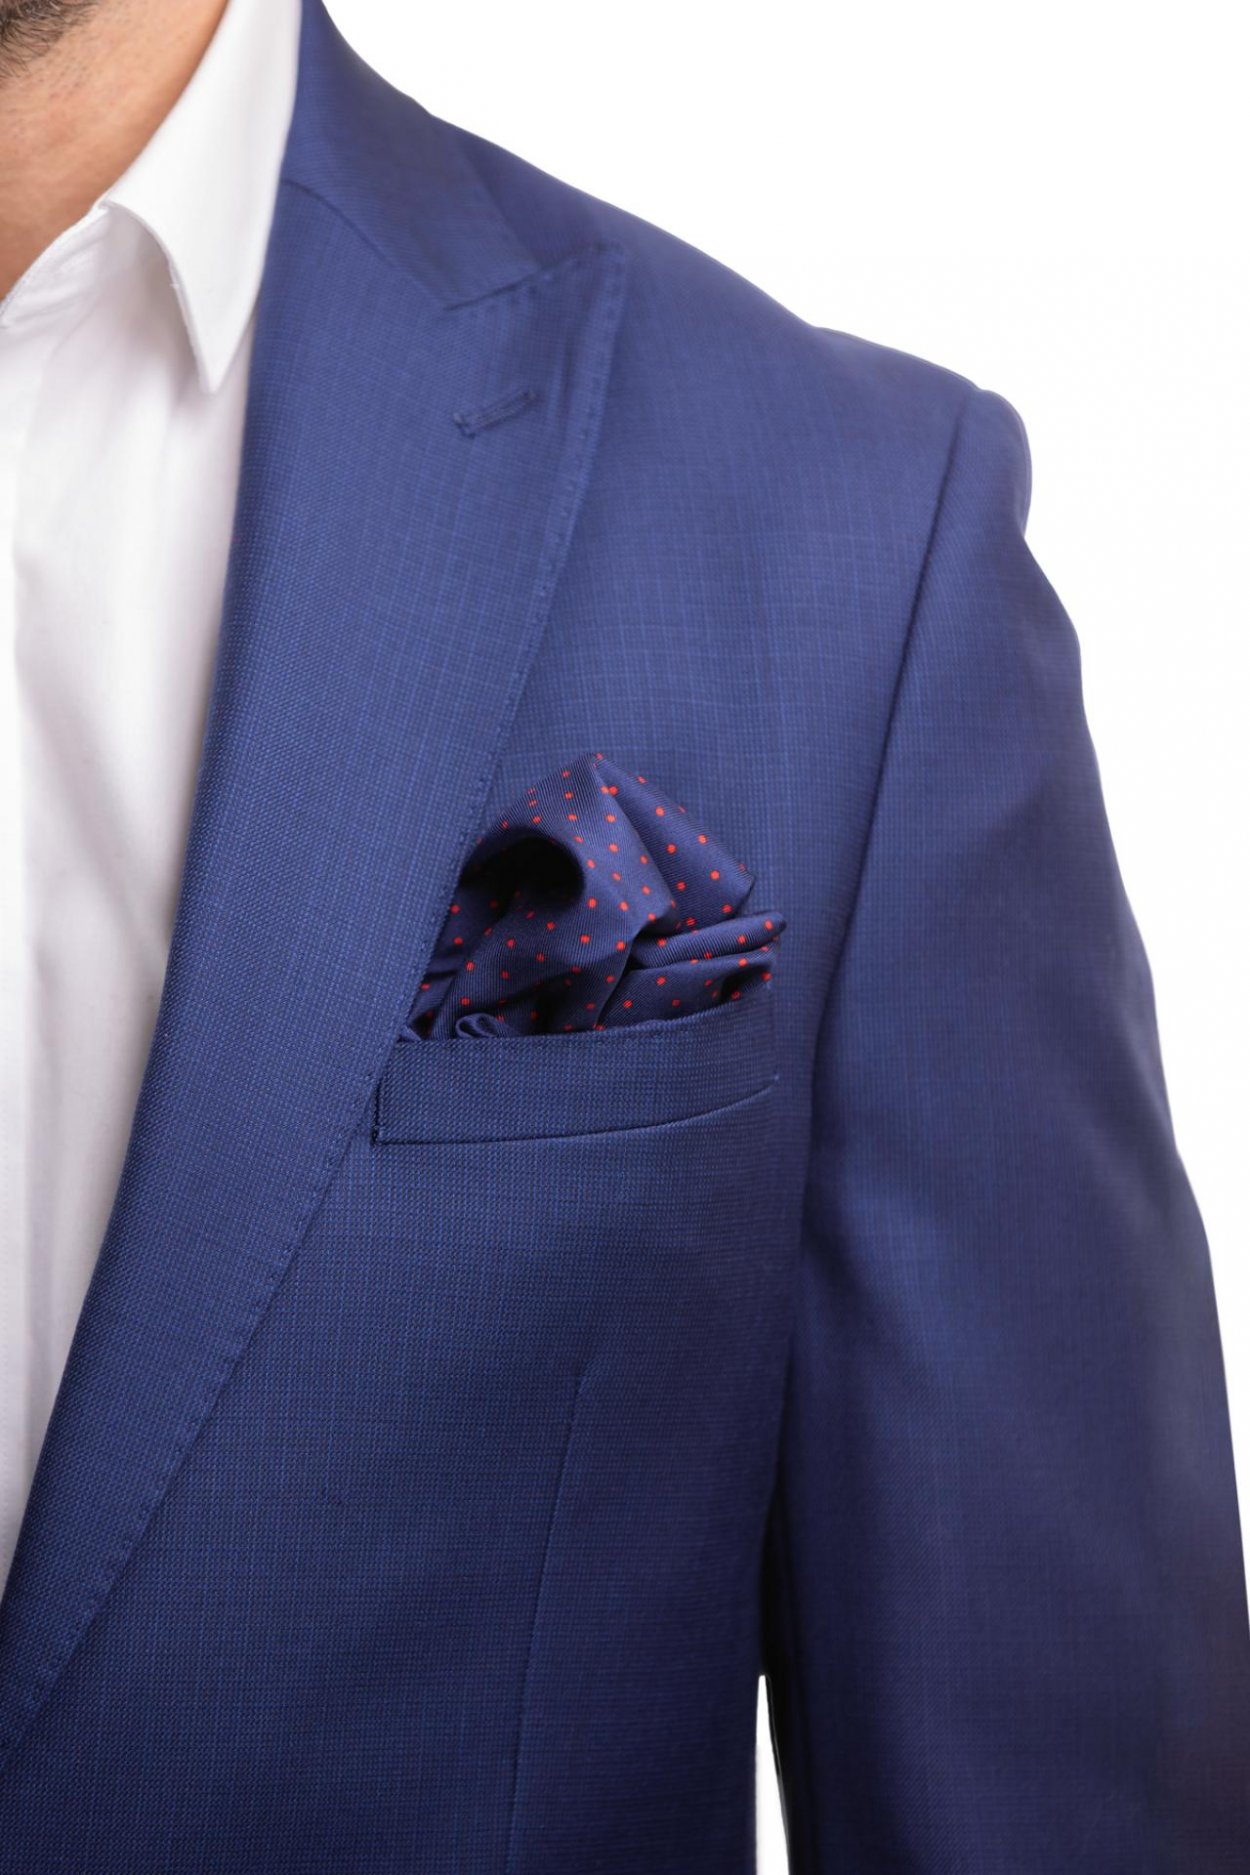 Tmavě modrý hedvábný kapesníček s puntíkem